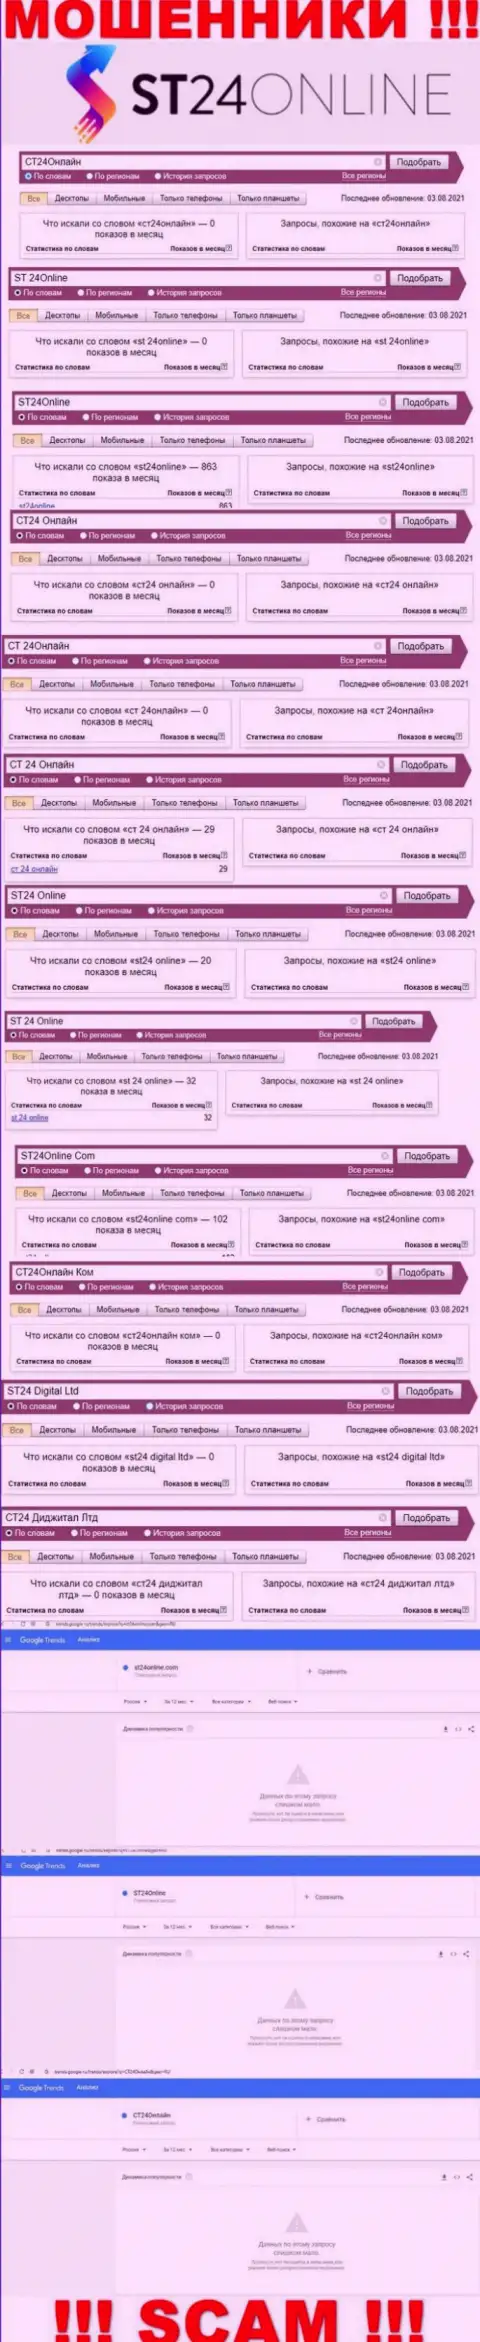 Количество поисковых запросов пользователями интернет сети материала об мошенниках ST24Online